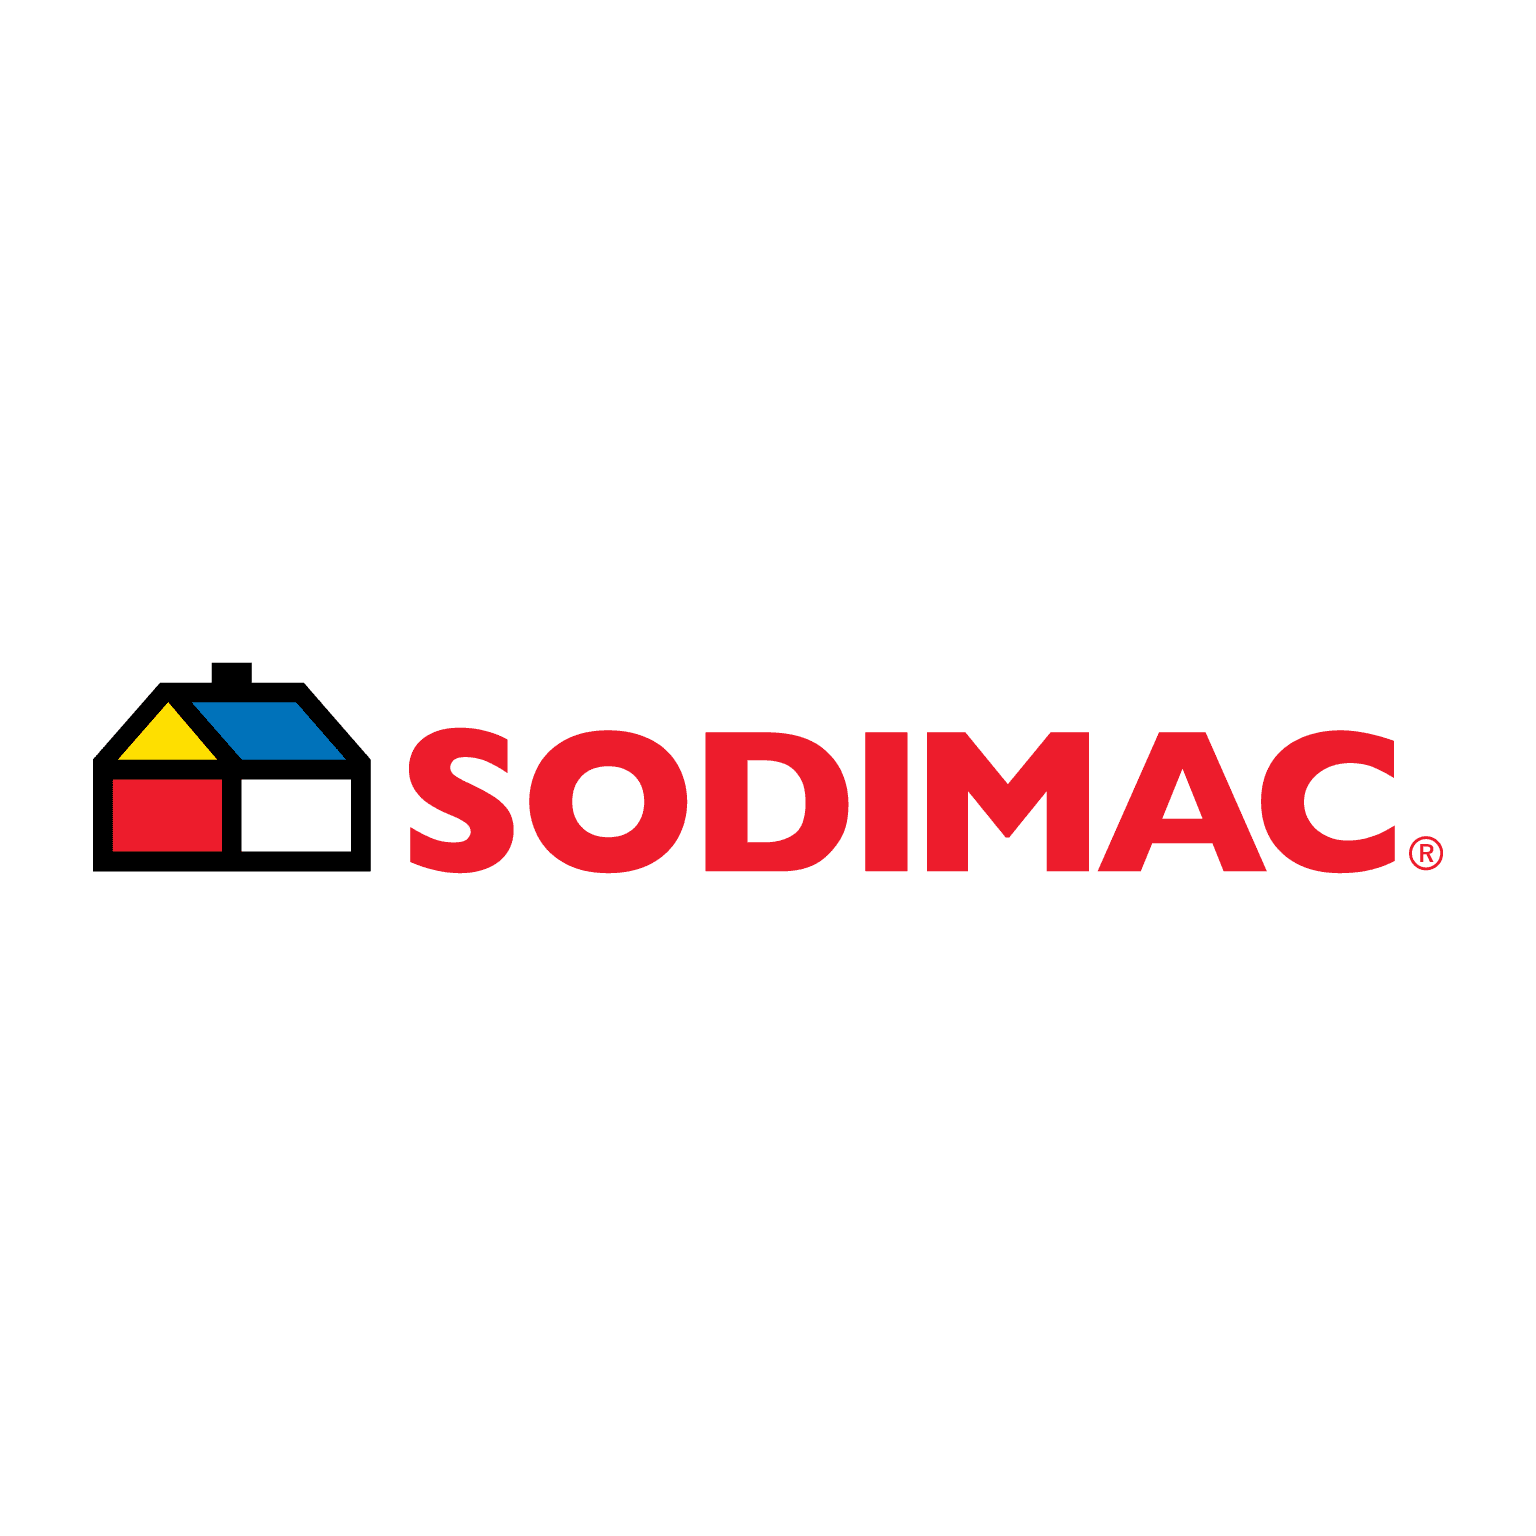 logotipo sodimac